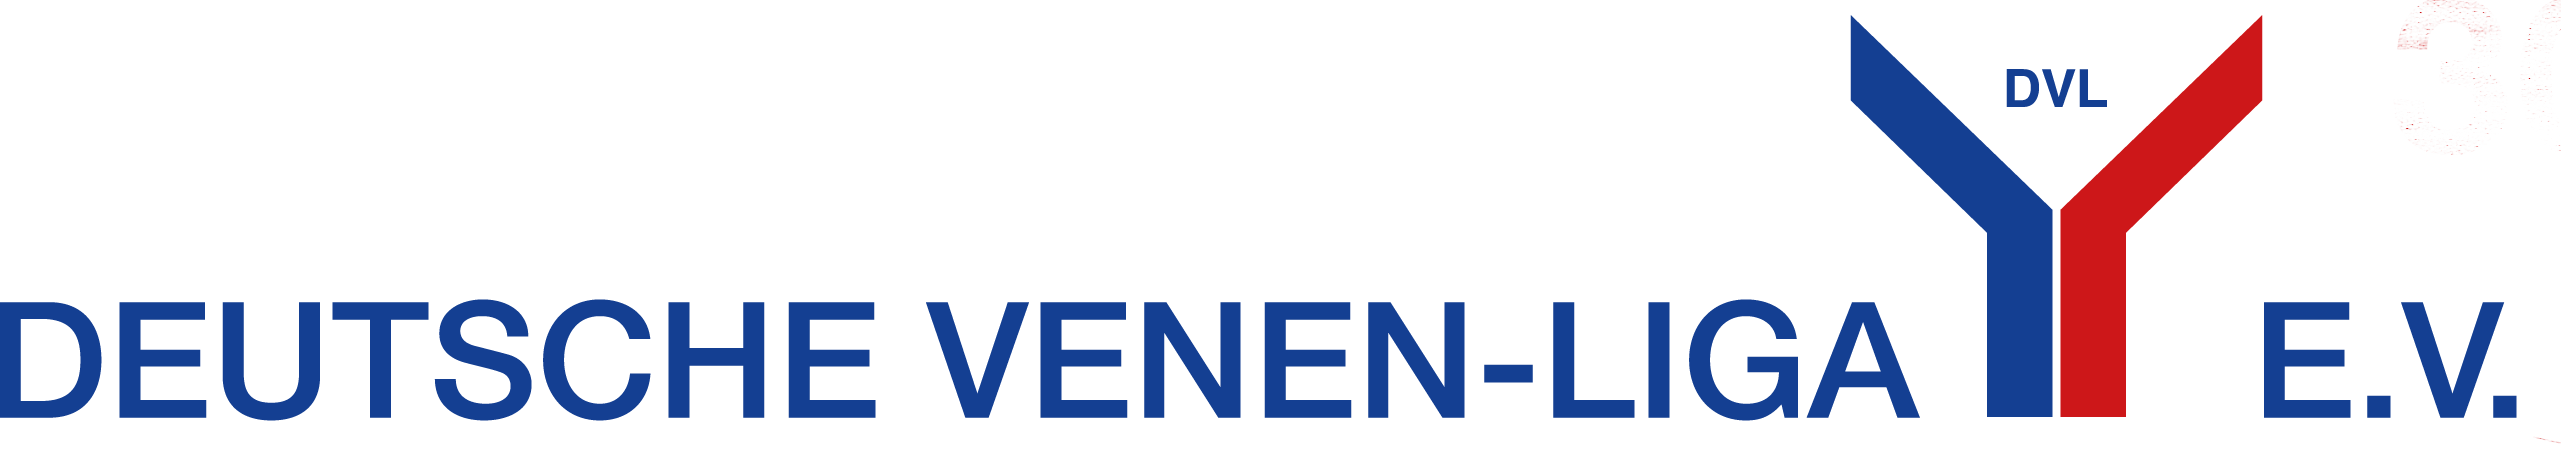 Deutsche Venen-Liga e.V. logo